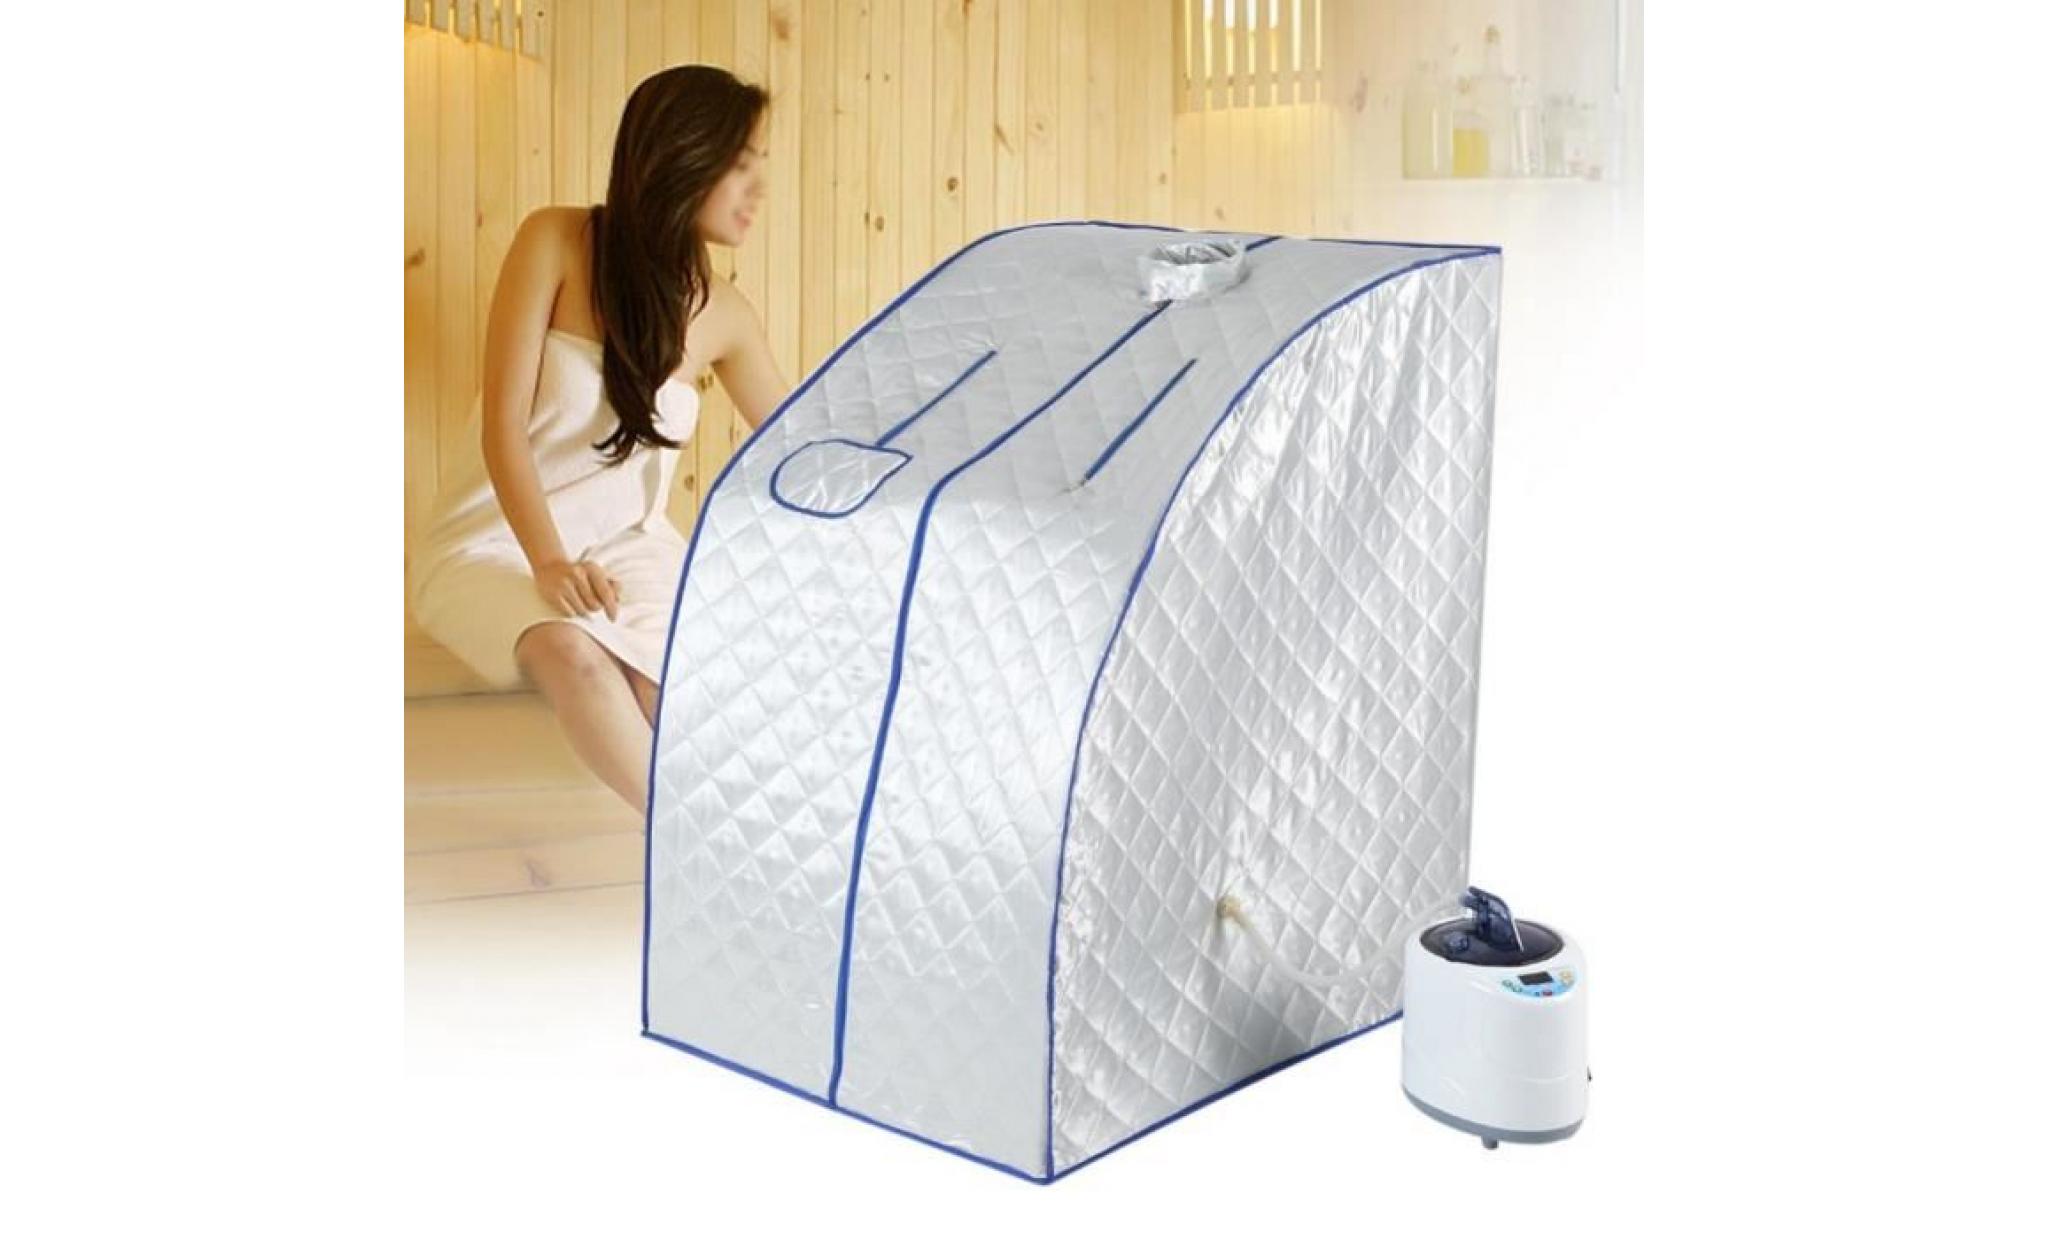 2l machine appareil sauna à vapeur portable avec tente pliable télécommande spa santé beauté intérieur 1000w       timesquare